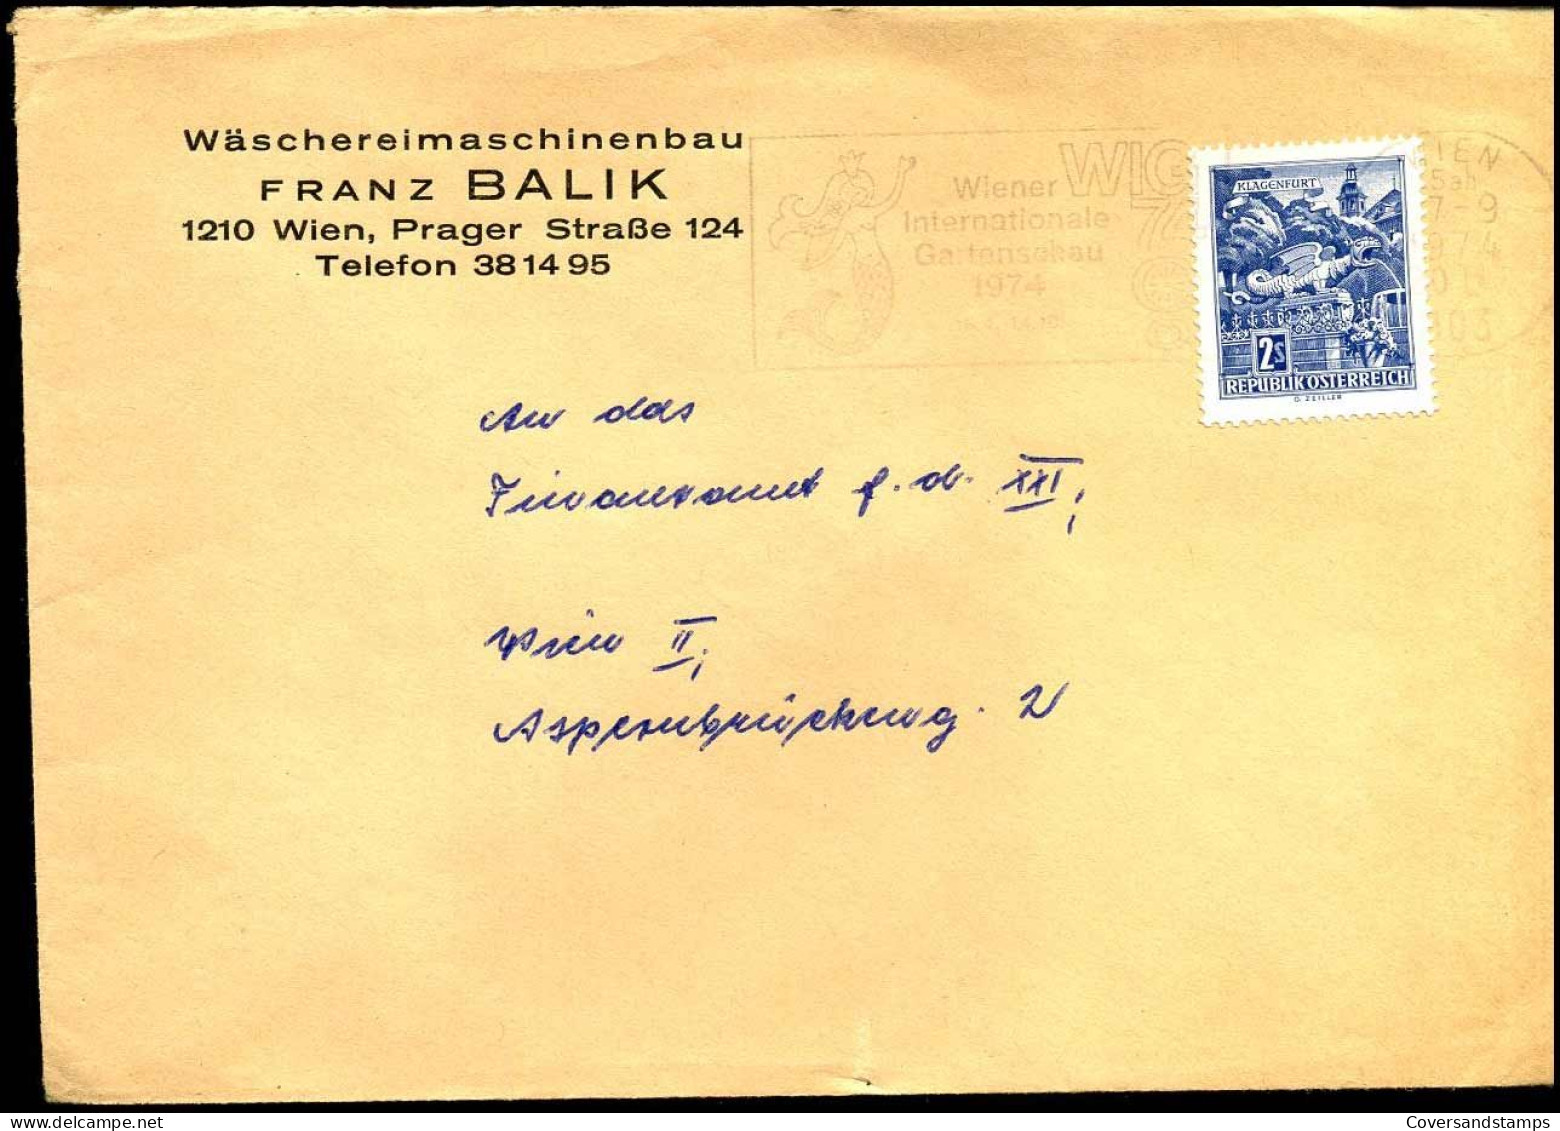 Cover - "Wäschereimaschinenbau Franz Balik, Wien" - Covers & Documents